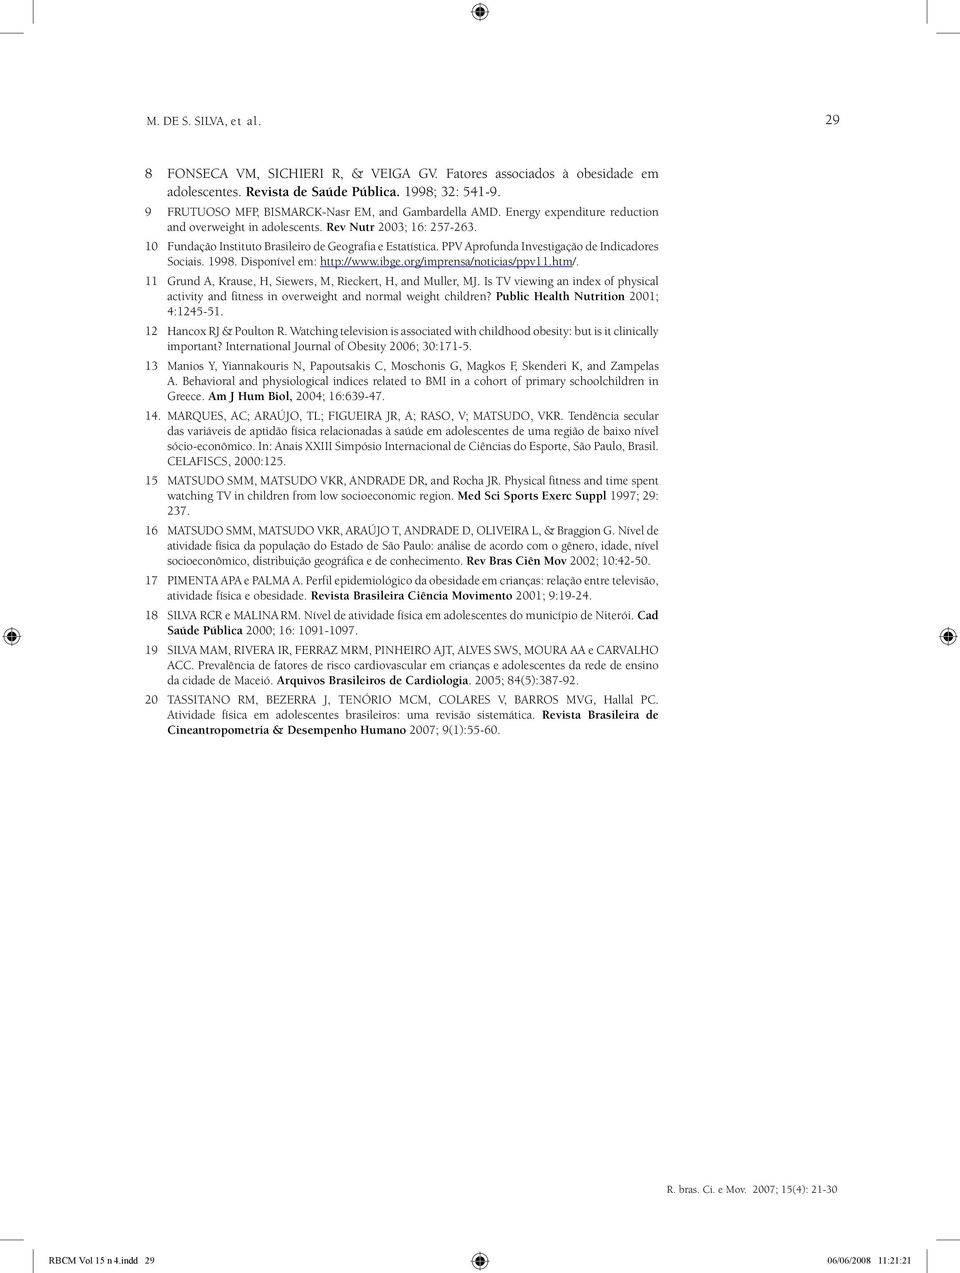 10 Fundação Instituto Brasileiro de Geografia e Estatística. PPV Aprofunda Investigação de Indicadores Sociais. 1998. Disponível em: http://www.ibge.org/imprensa/noticias/ppv11.htm/.